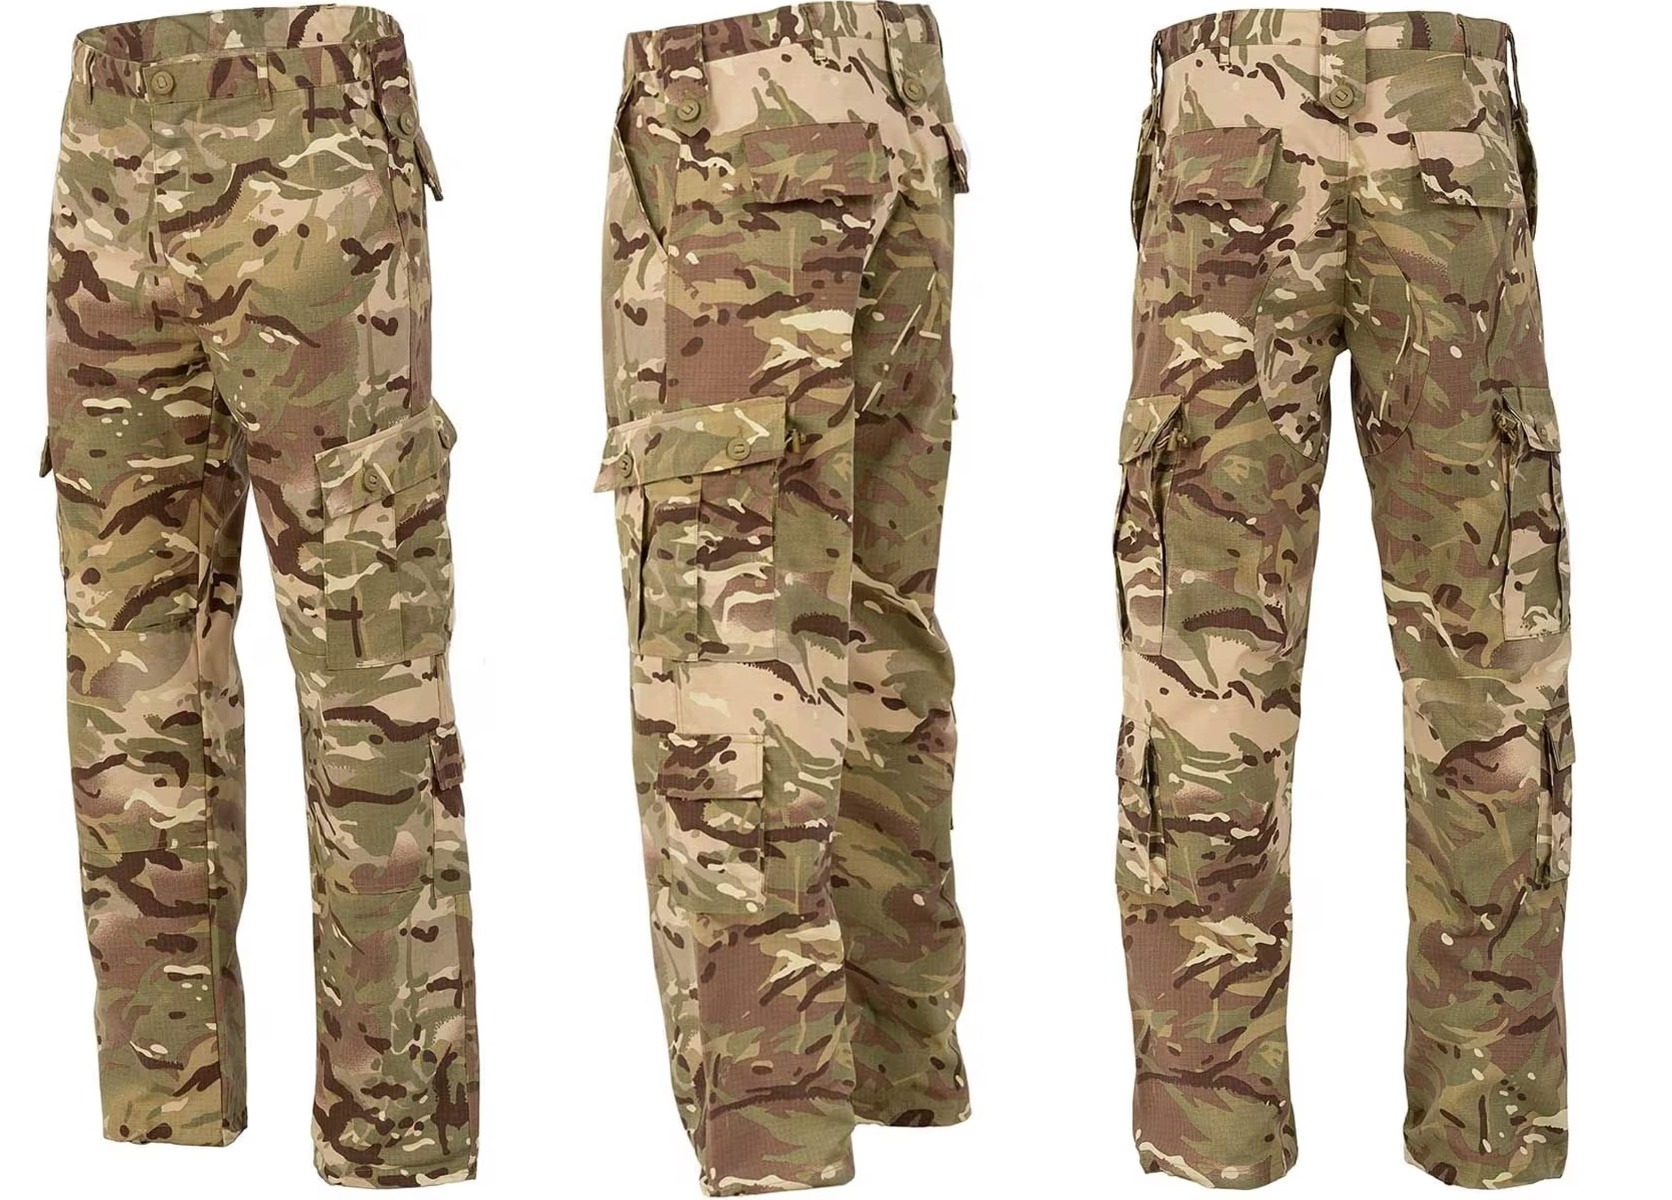  Izberite vrhunske Highlander Forces Elite rip-stop bojne hlače v multicamo vzorcu za taktične potrebe. Vrhunska kakovost in vzdržljivost za vojsko, policijo in specialne enote. Oprema, ki združuje taktični slog in večnamenskost.